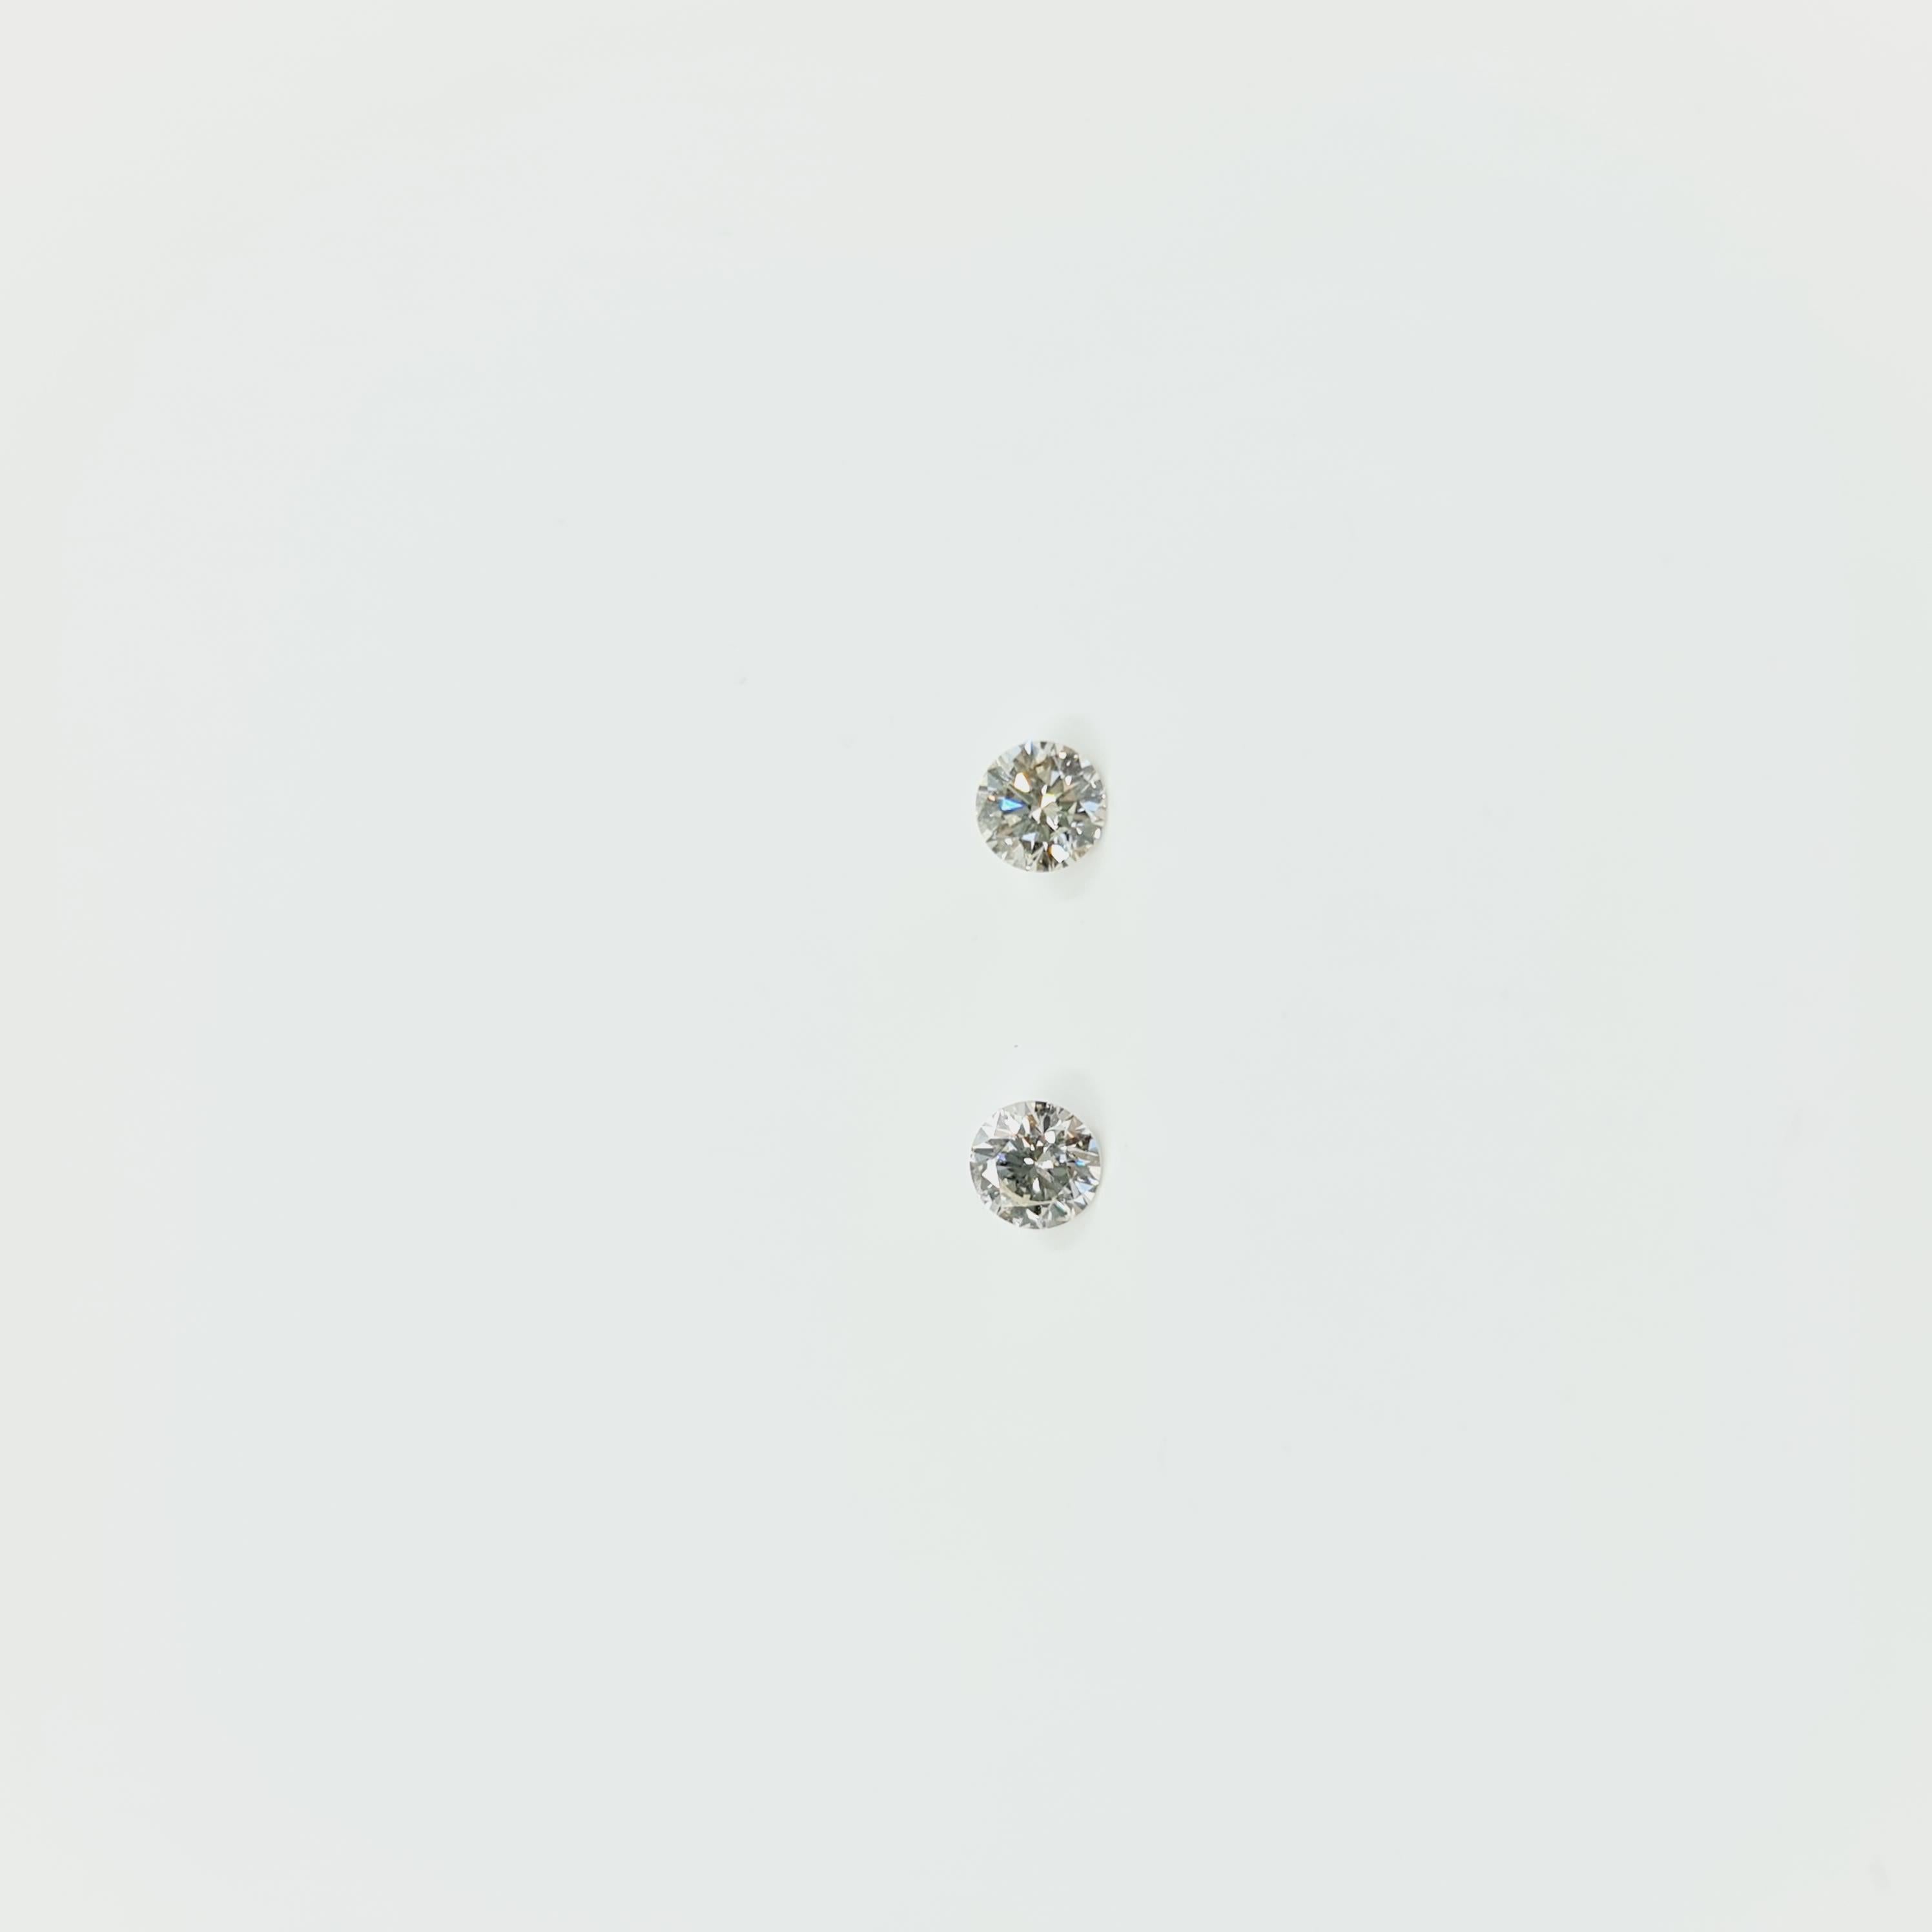 Diamant solitaire certifié GIA de 0,24 carat L/VS2, 0,24 carat O-P/SI1 
Boucles d'oreilles en or 750 (blanc ou jaune sur demande) avec diamants taillés en brillant.  
Brillant poli.   

A.C.C. :
Certificat : GIA
Carat : 0,24ct
Couleur : L
Clarté :